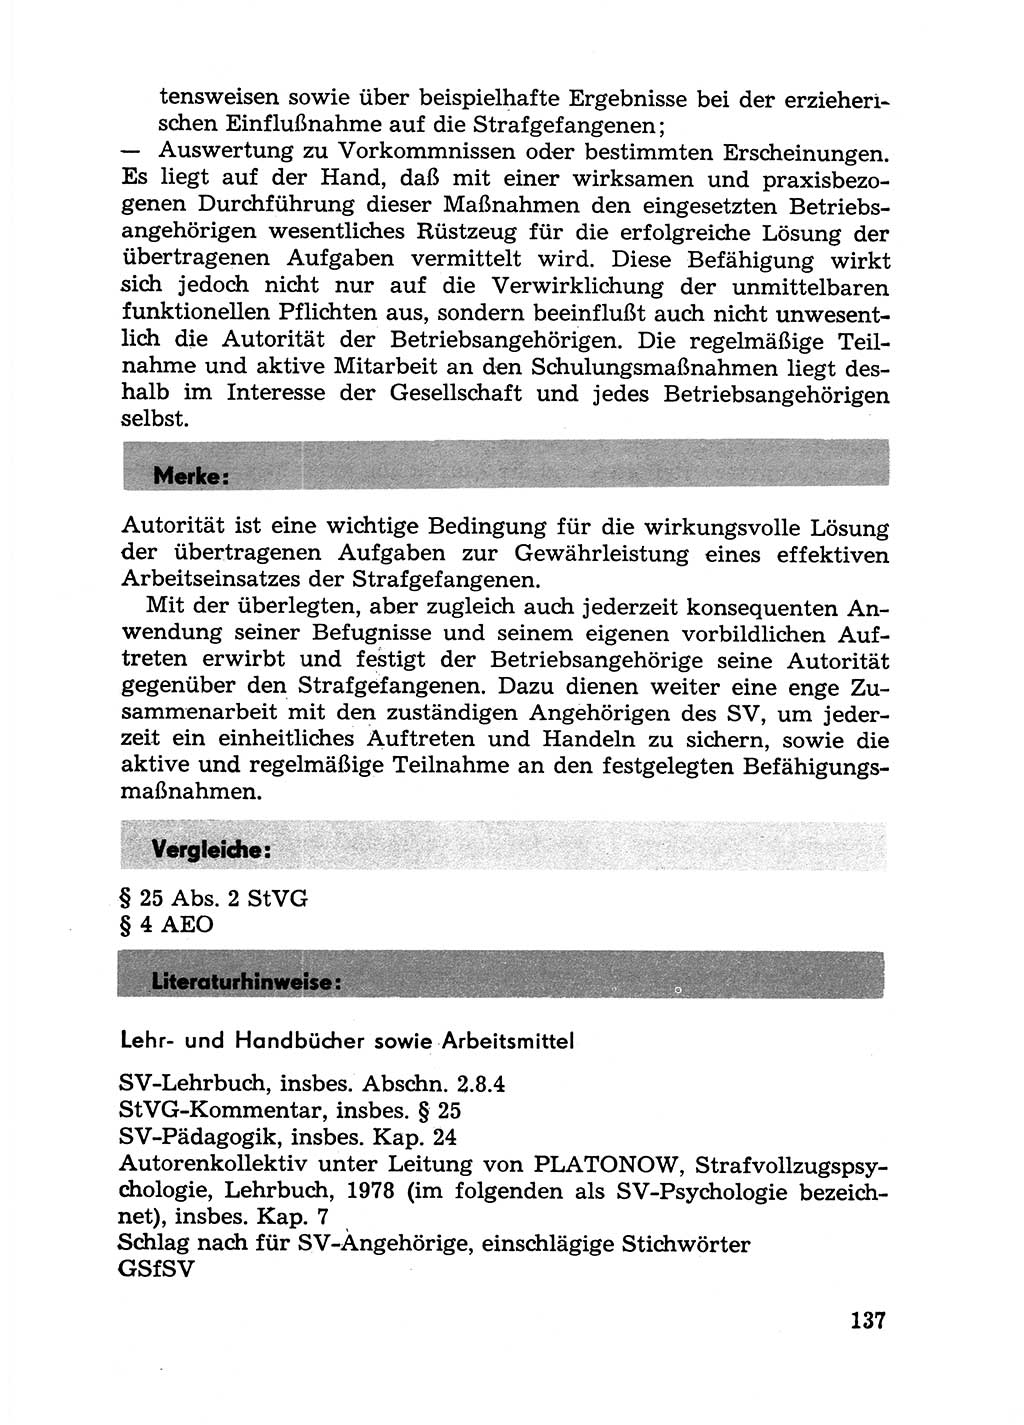 Handbuch für Betriebsangehörige, Abteilung Strafvollzug (SV) [Ministerium des Innern (MdI) Deutsche Demokratische Republik (DDR)] 1981, Seite 137 (Hb. BA Abt. SV MdI DDR 1981, S. 137)